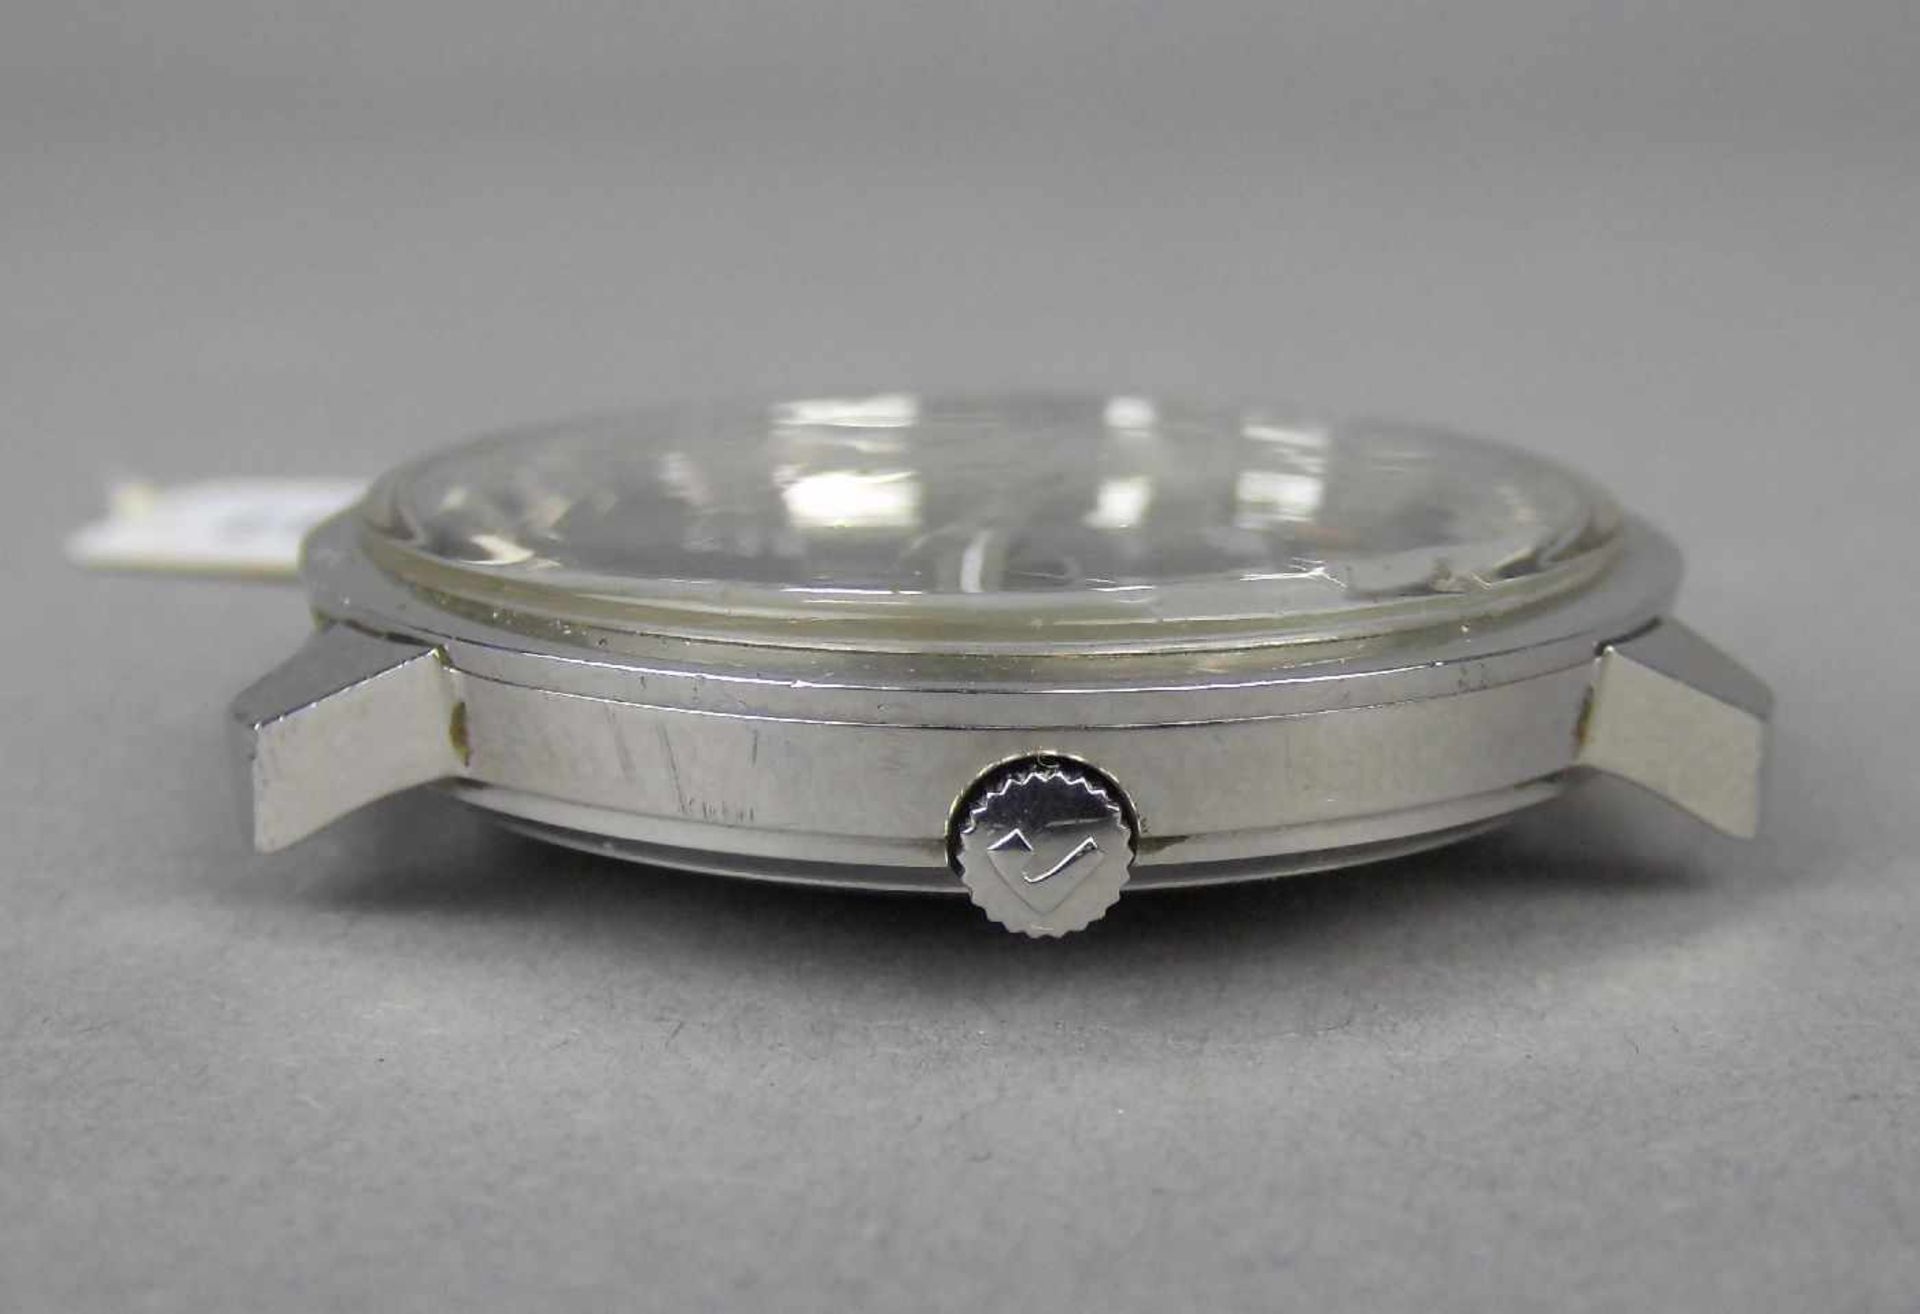 VINTAGE ARMBANDUHR: ROAMER MUSTANG / wristwatch, 1960er / 1970er Jahre, Manufaktur Roamer / Schweiz. - Image 4 of 6